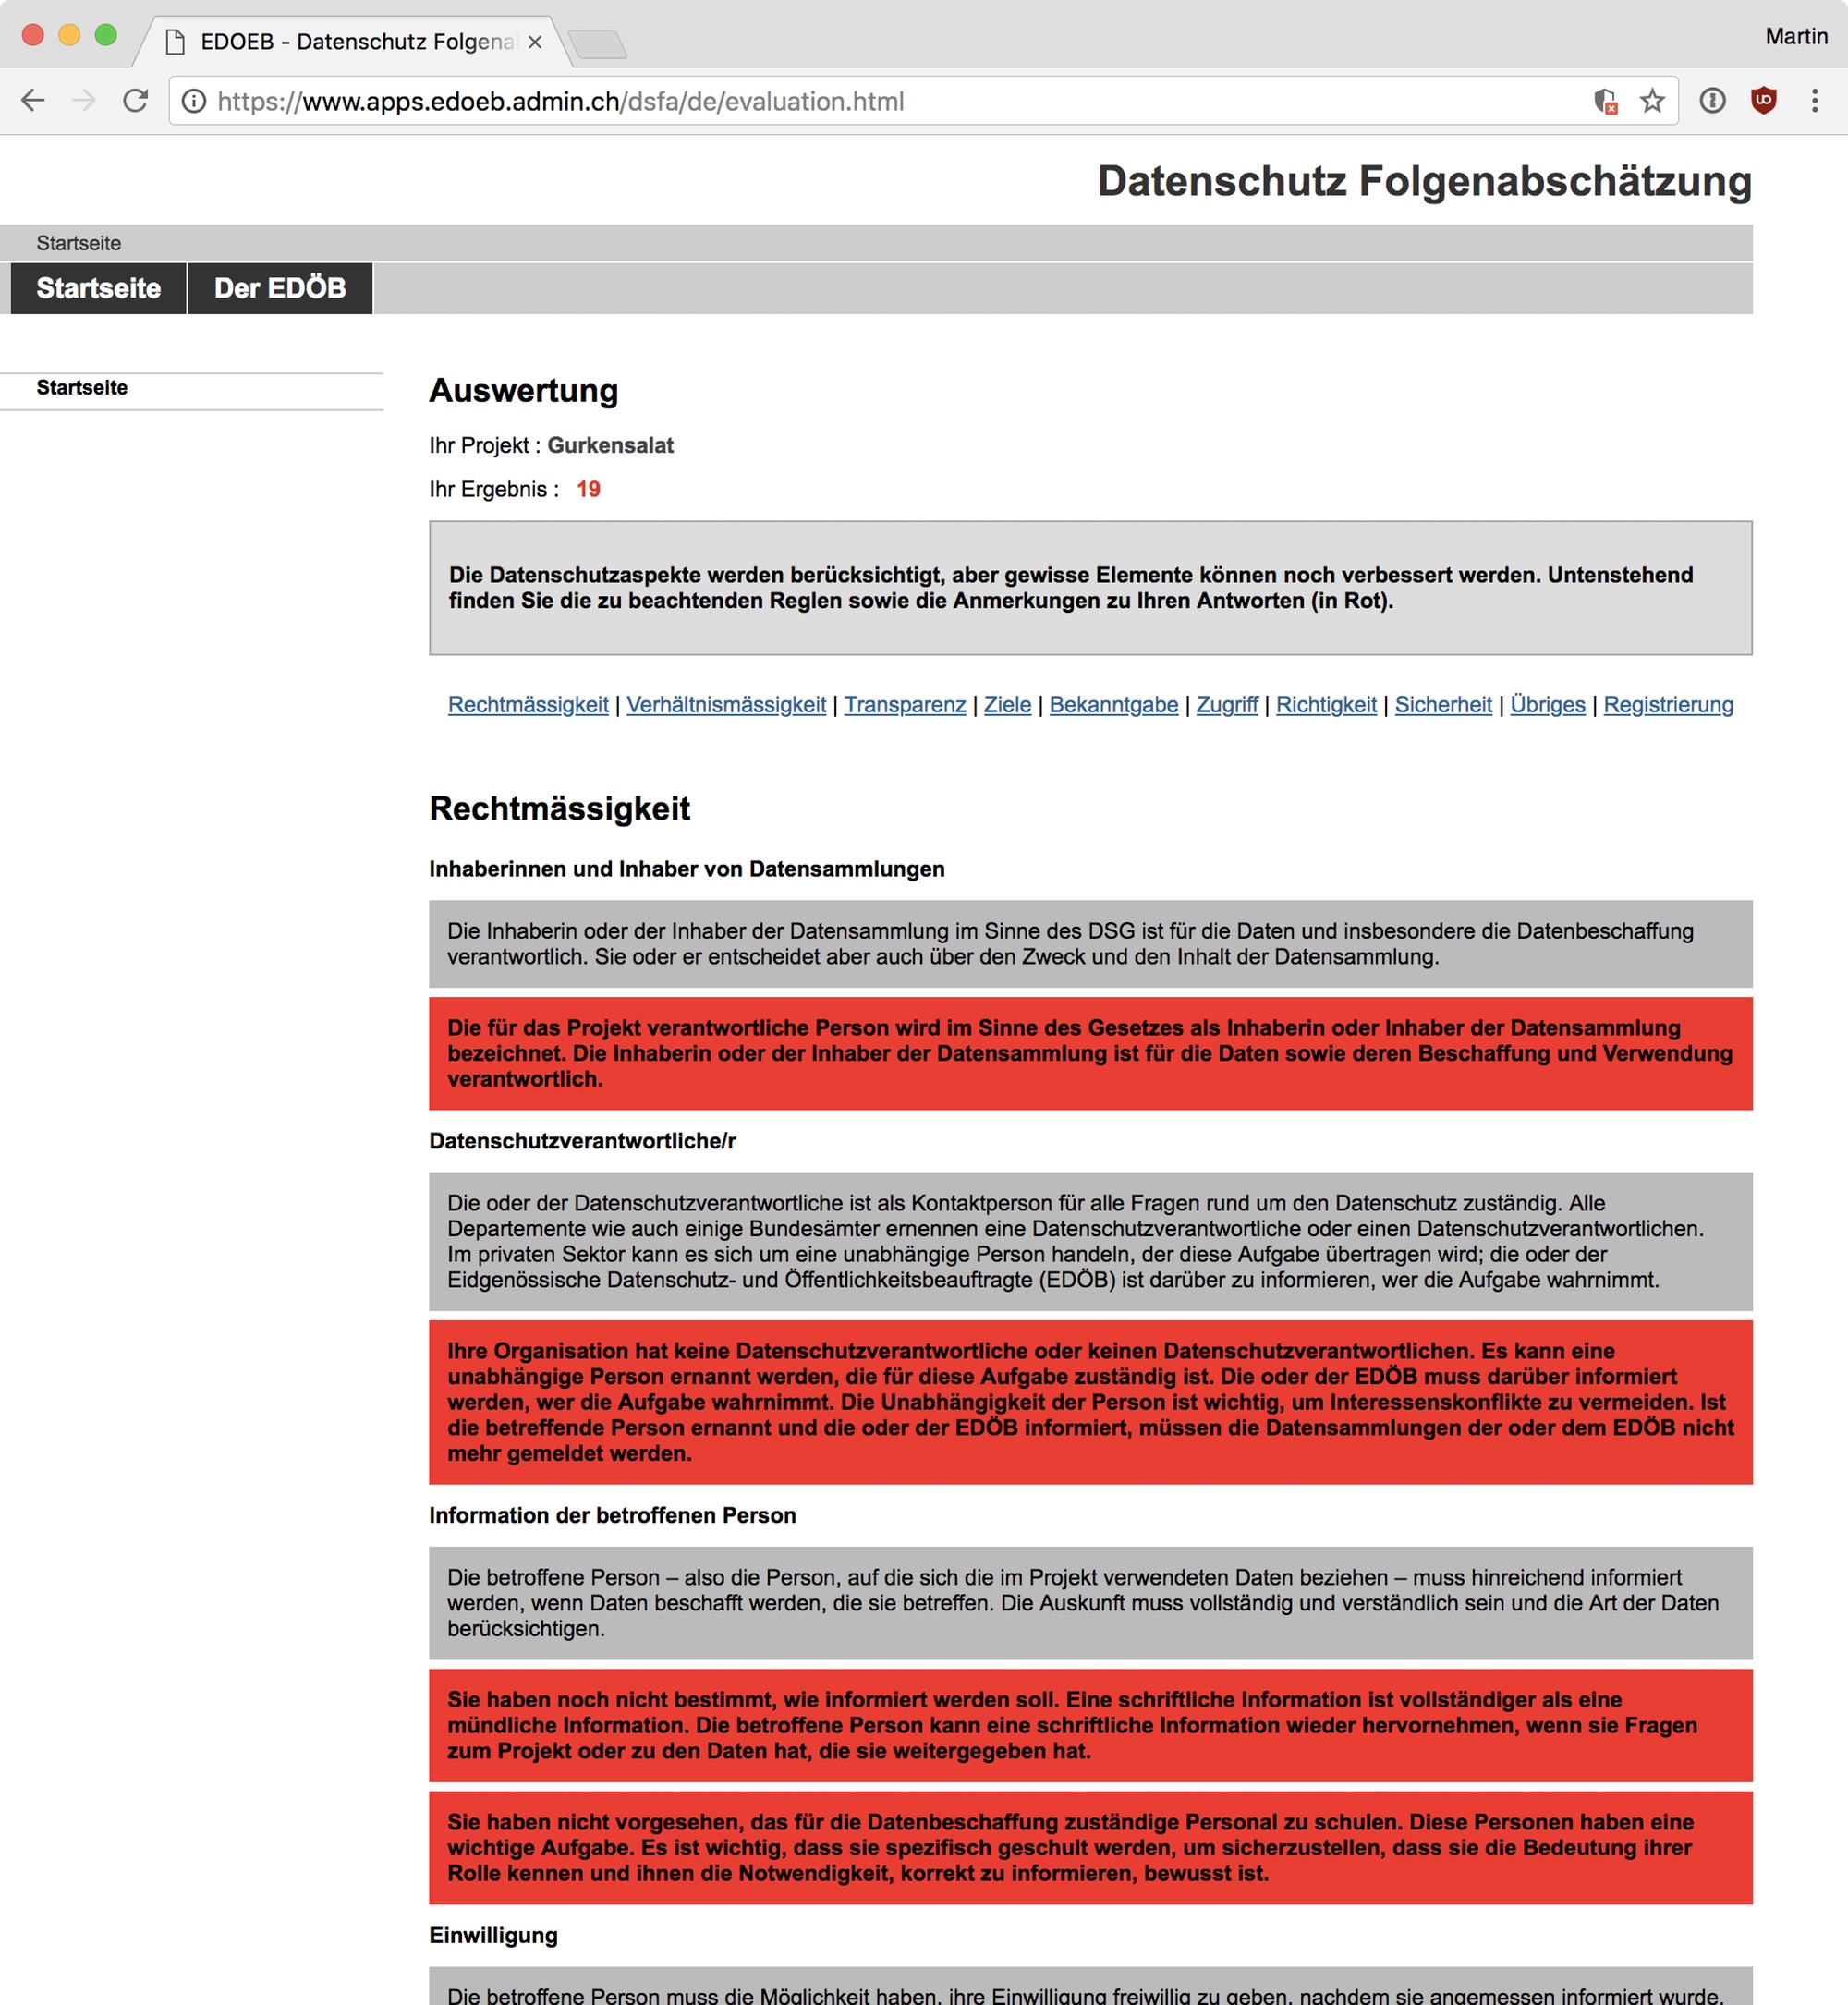 Screenshot: Online-Fragebogen für Datenschutz-Folgenabschätzung auf der Website des Eidgenössischen Datenschutz- und Öffentlichkeitsbeauftragten (EDÖB)